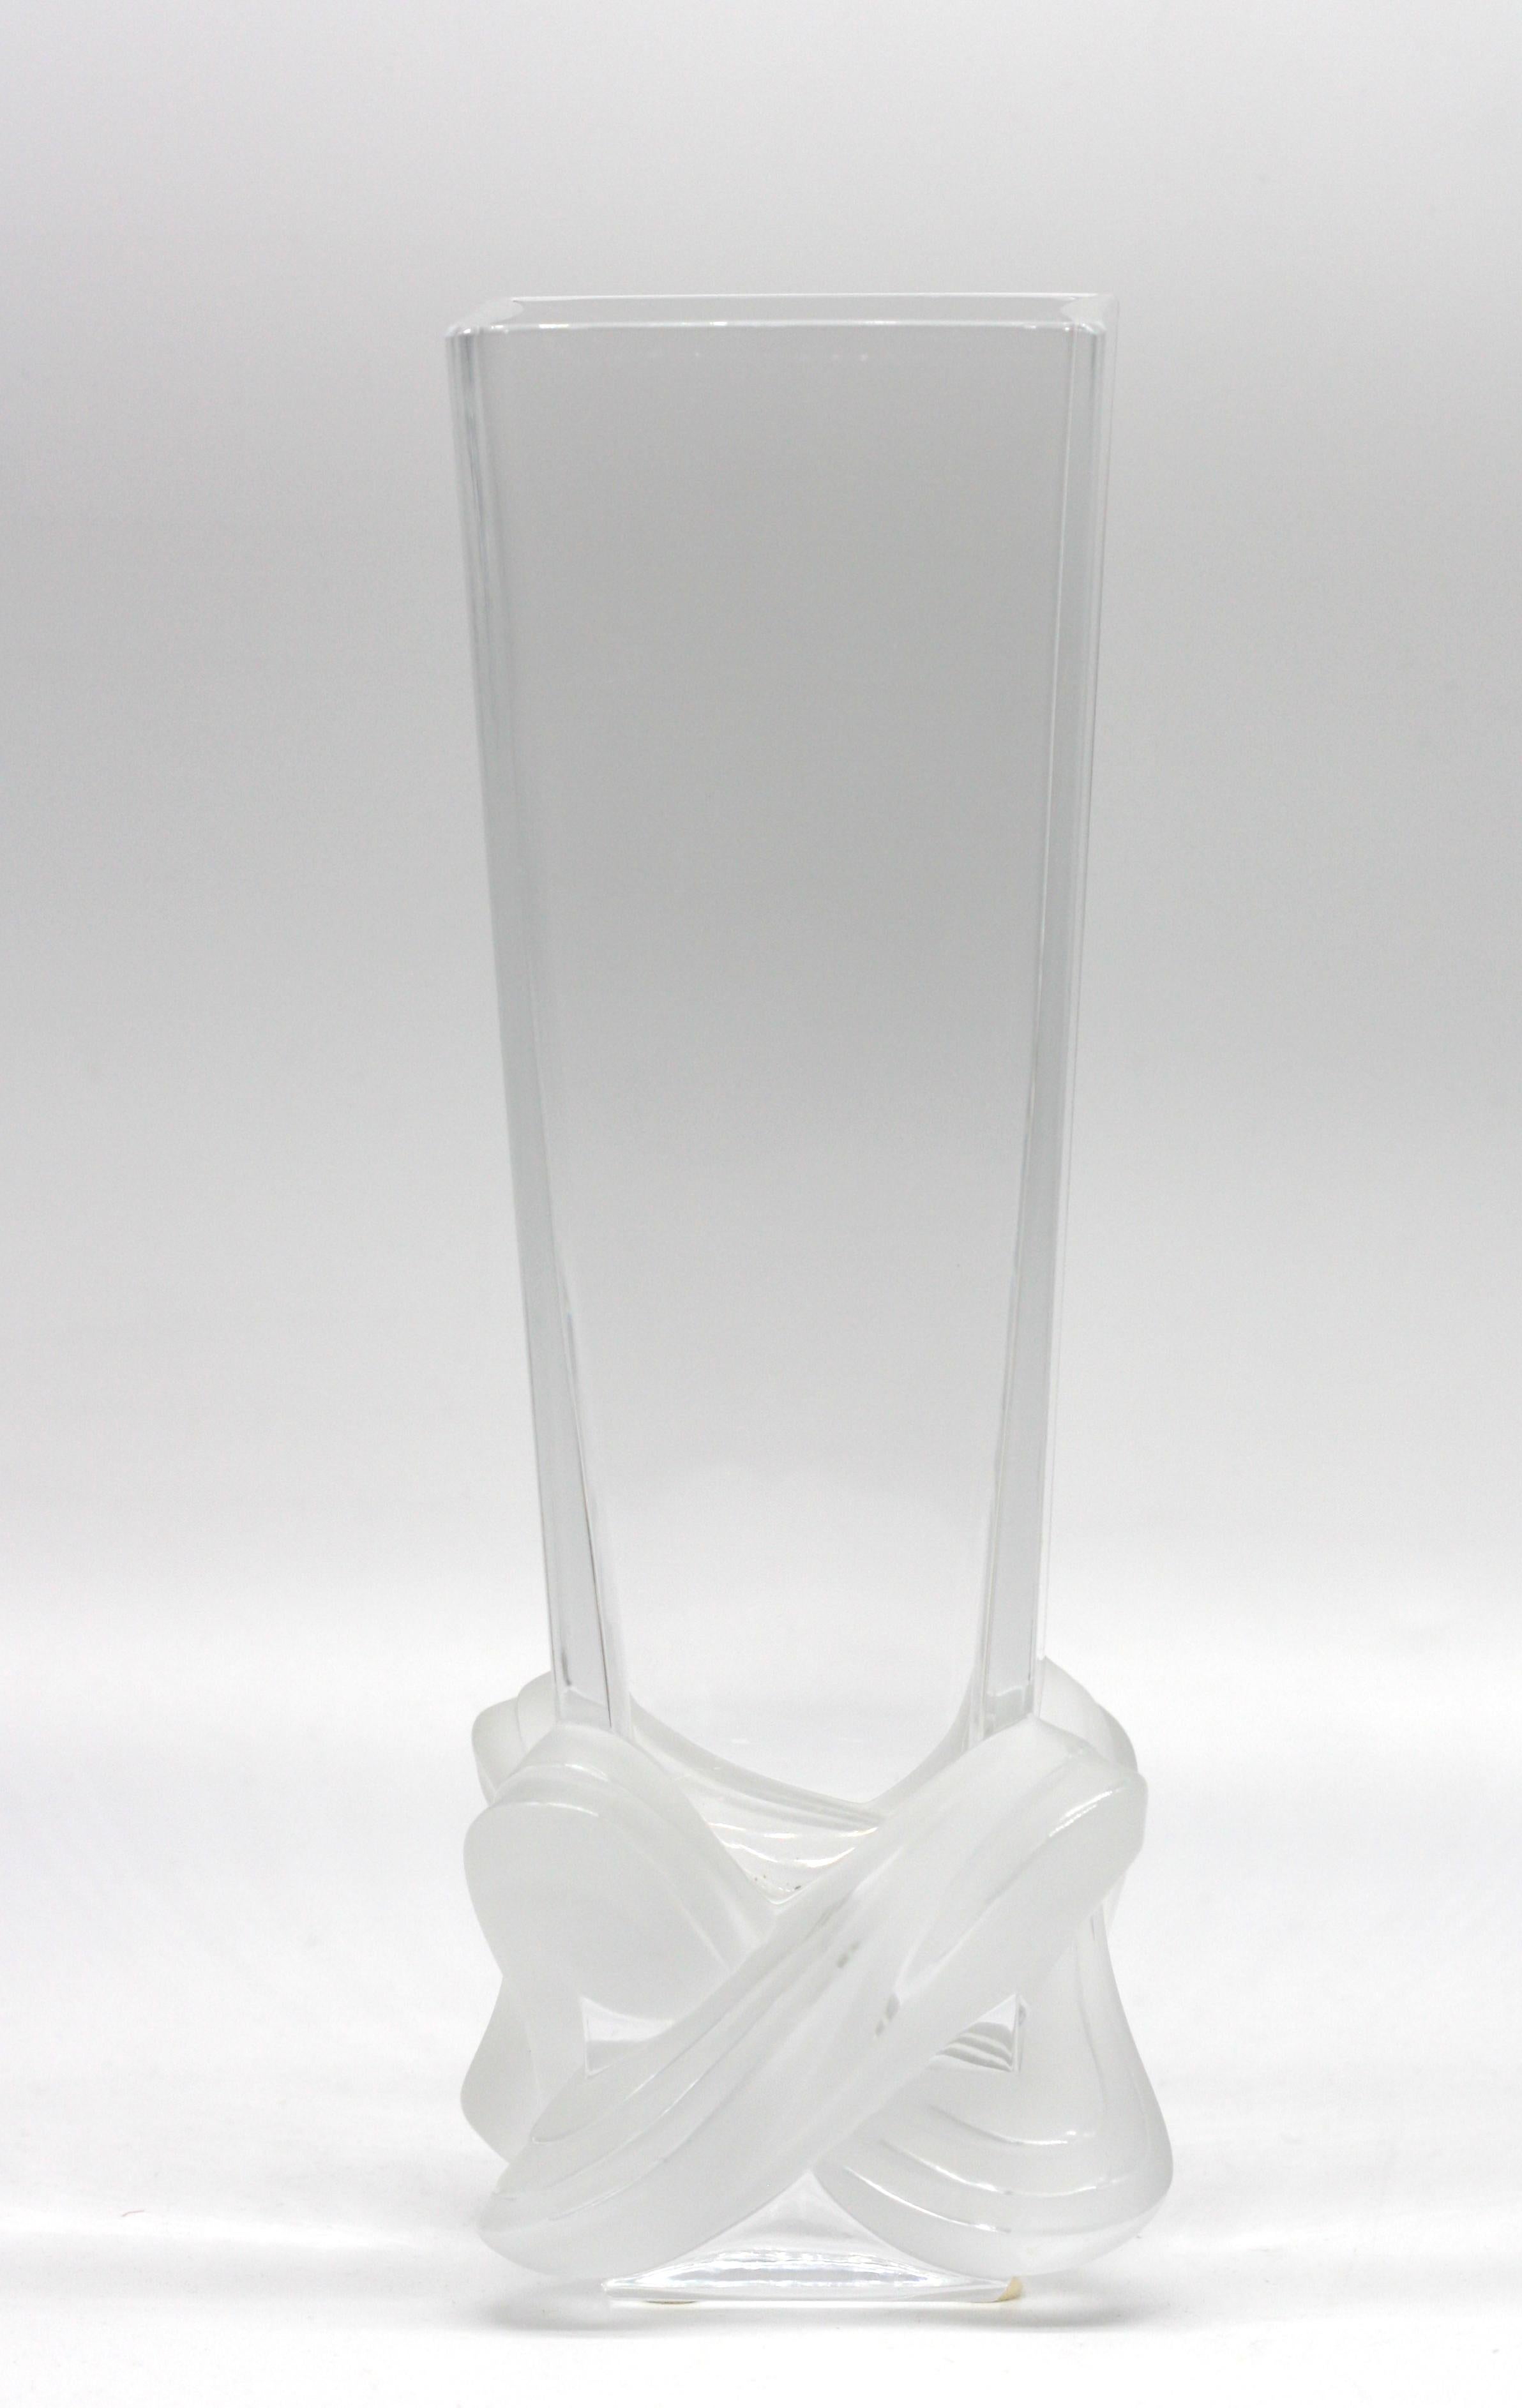 
Vase incolore en partie en cristal dépoli Lalique 
Signé M. Lalique, (Marie-Claude Lalique Dedouvre, petite-fille de René Lalique), daté 3/14/99, de forme carrée et effilée, la base givrée étant modelée comme un entrelacs de sangles, avec la boîte